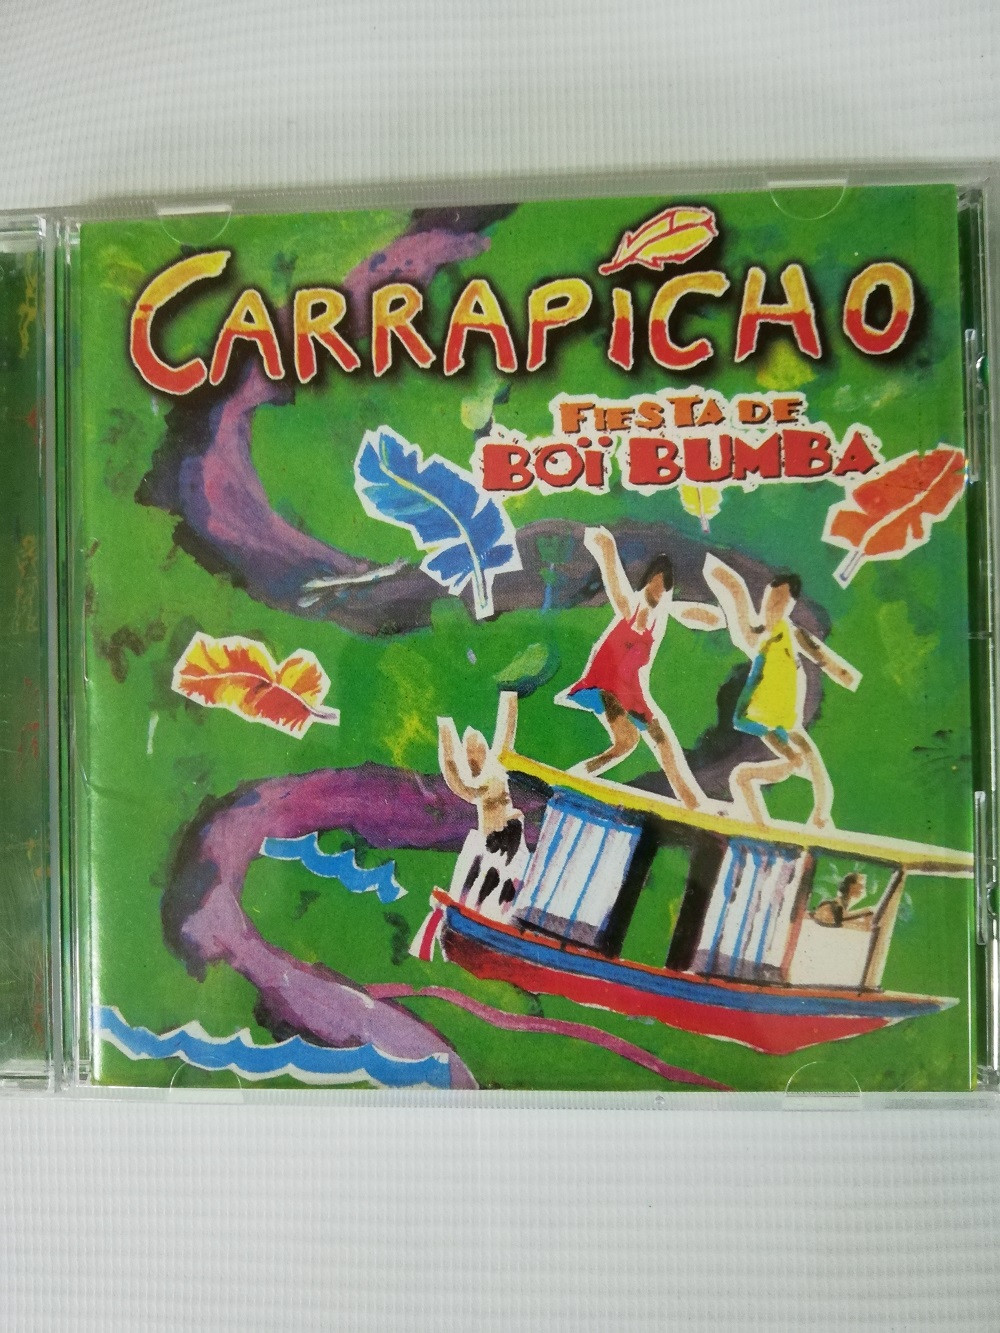 Imagen CD CARRAPICHO - FIESTA DE BOÏ BUMBA 1